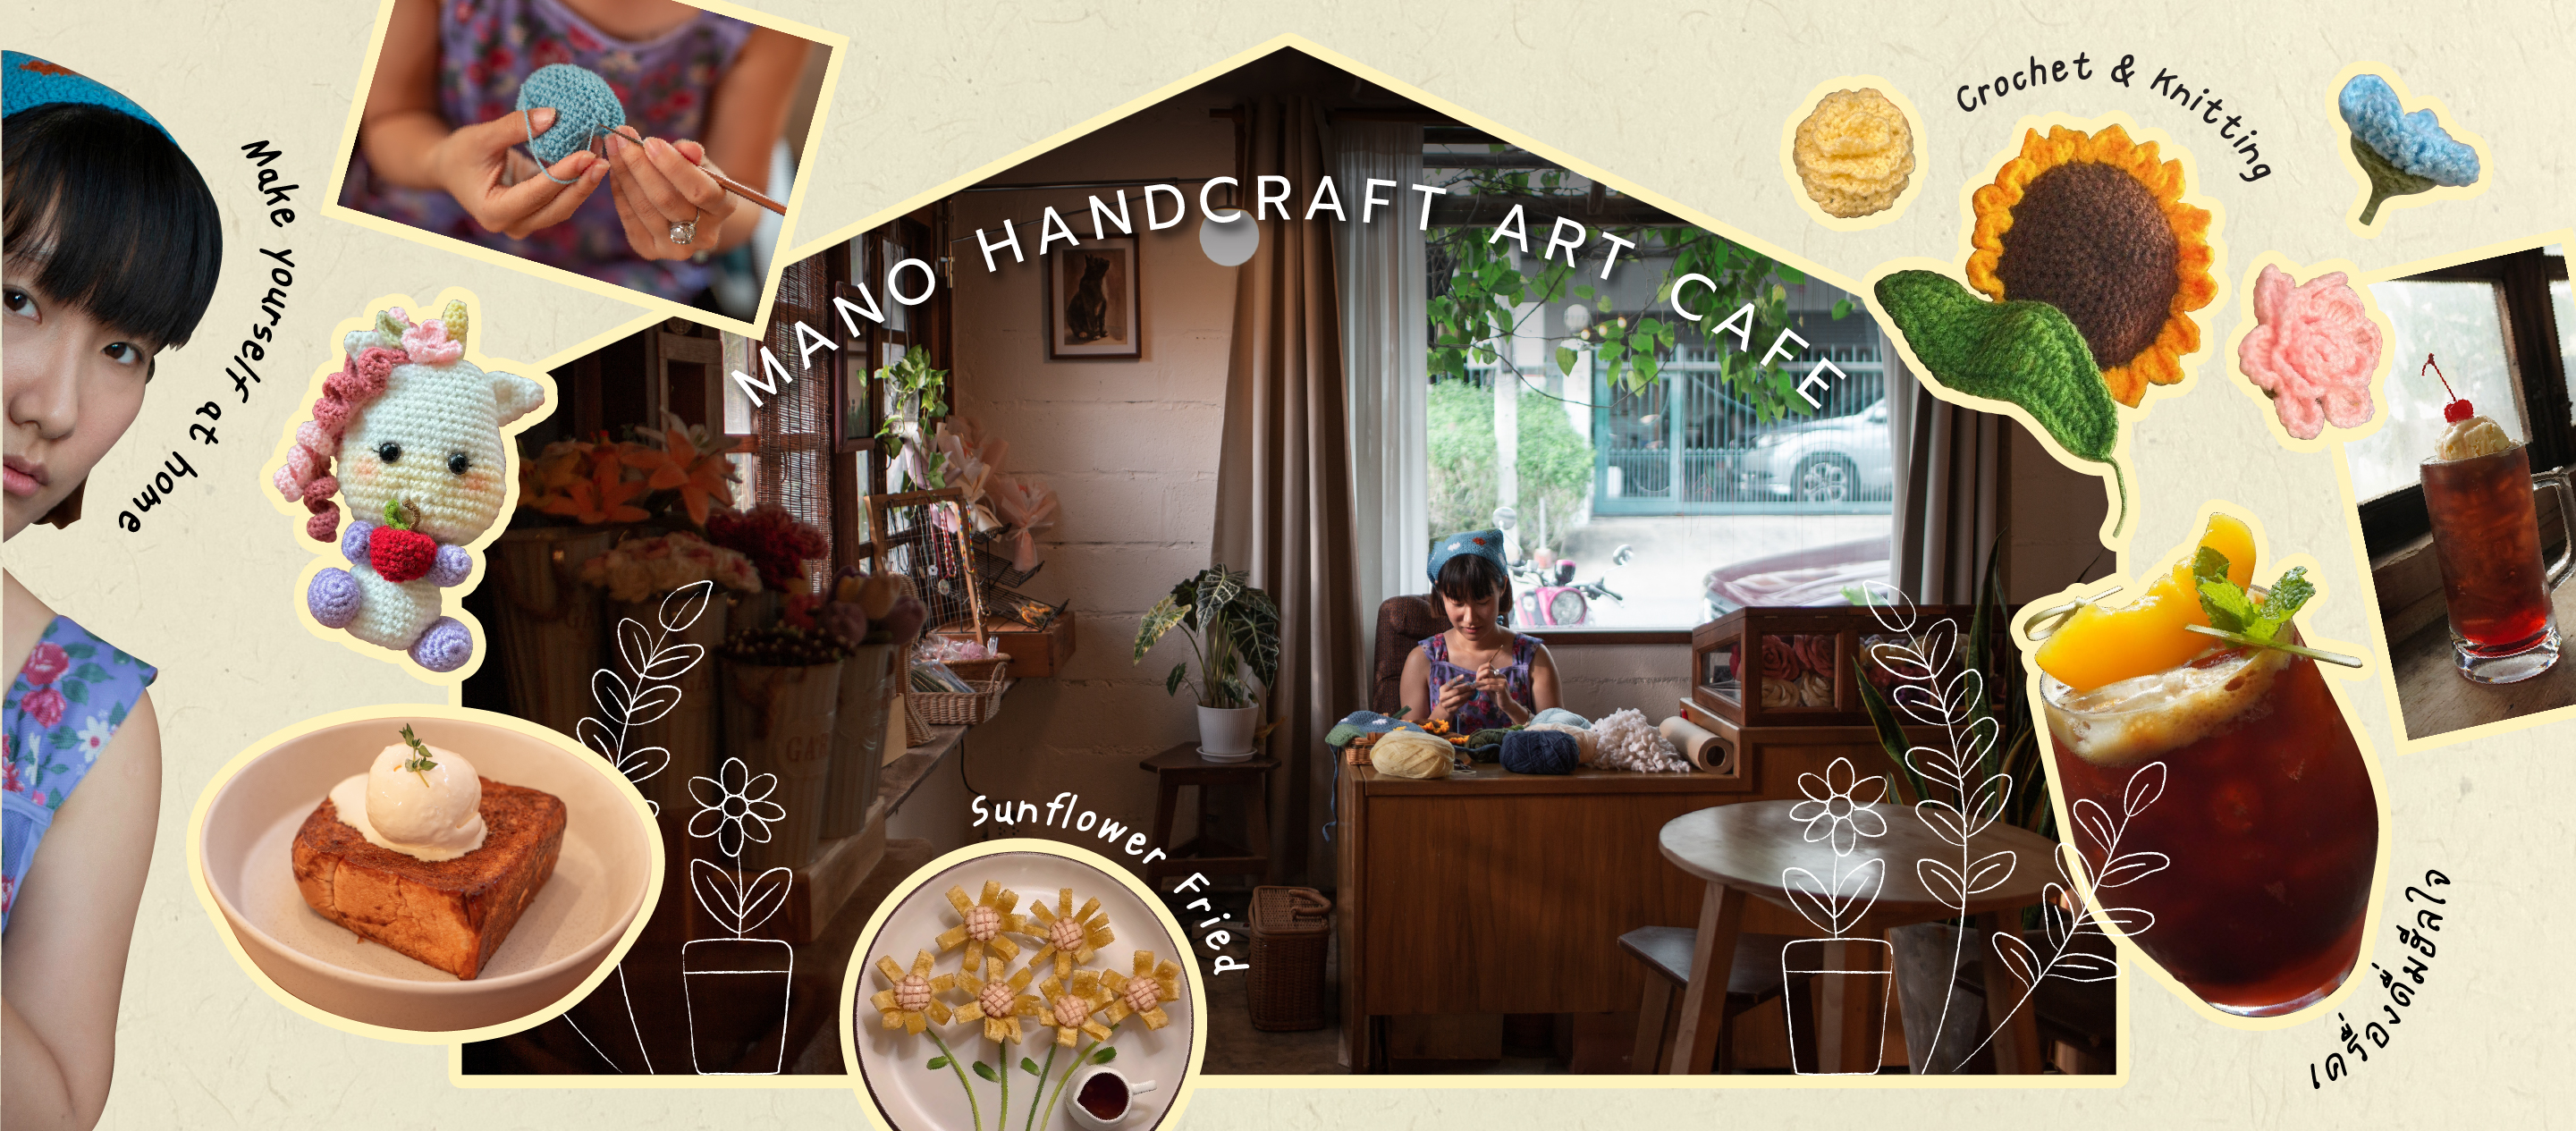 Mano Handcraft Cafe ร้านที่จะใช้งานถักนิตติ้งส่งความอบอุ่นโอบกอดหัวใจคุณกลับบ้านไปด้วยพลังงานแห่งความสุข